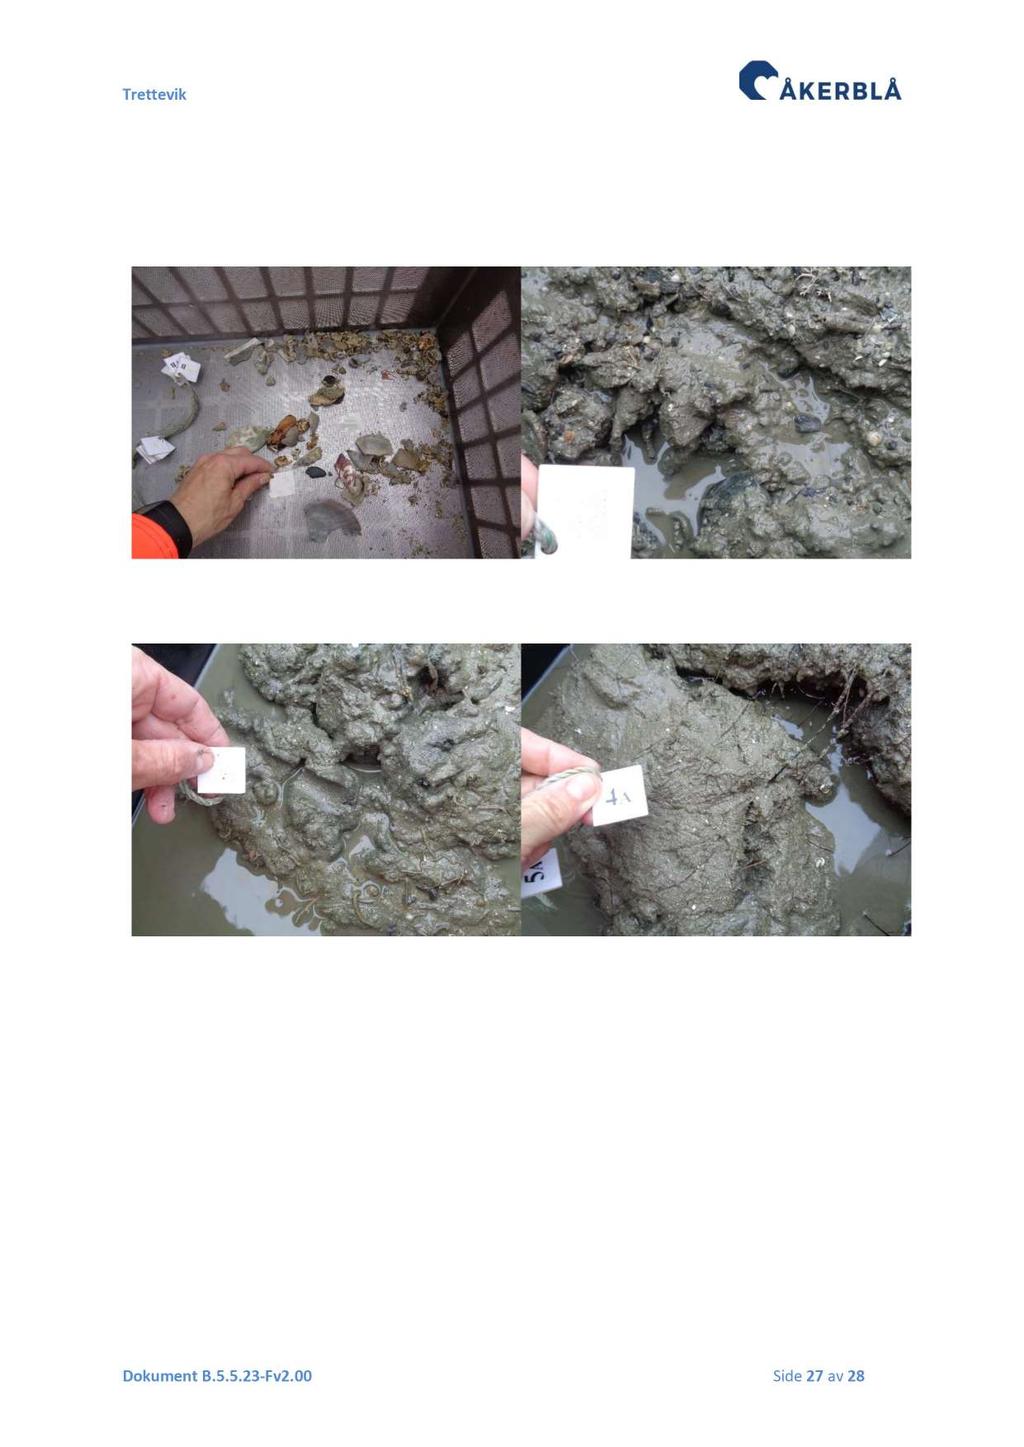 Vedlegg 2 Bilder sediment C - undersøkelse Det ble tatt bilder av sedimentet fra ett